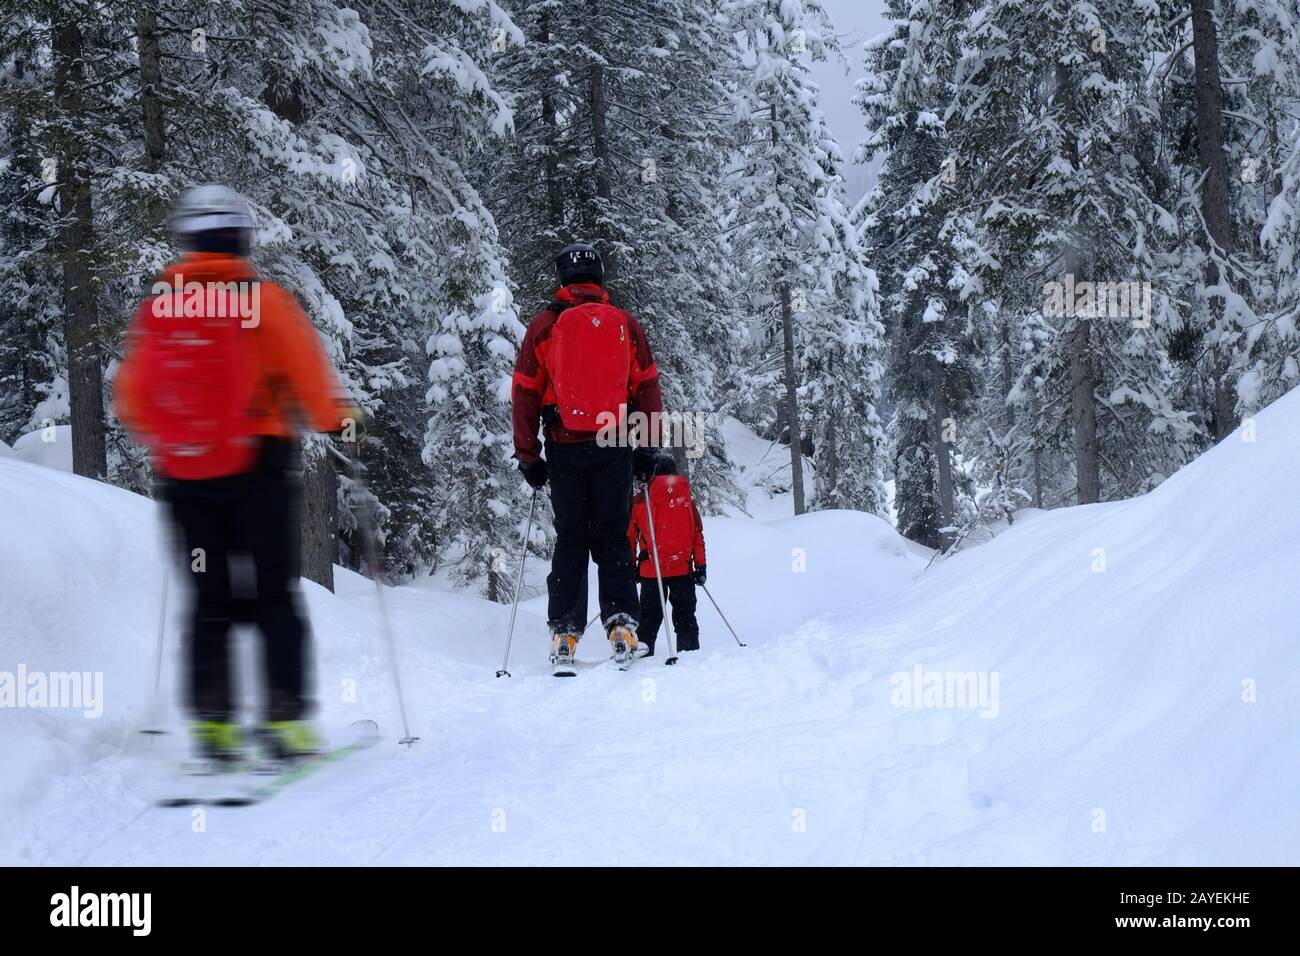 Ski tourers Stock Photo